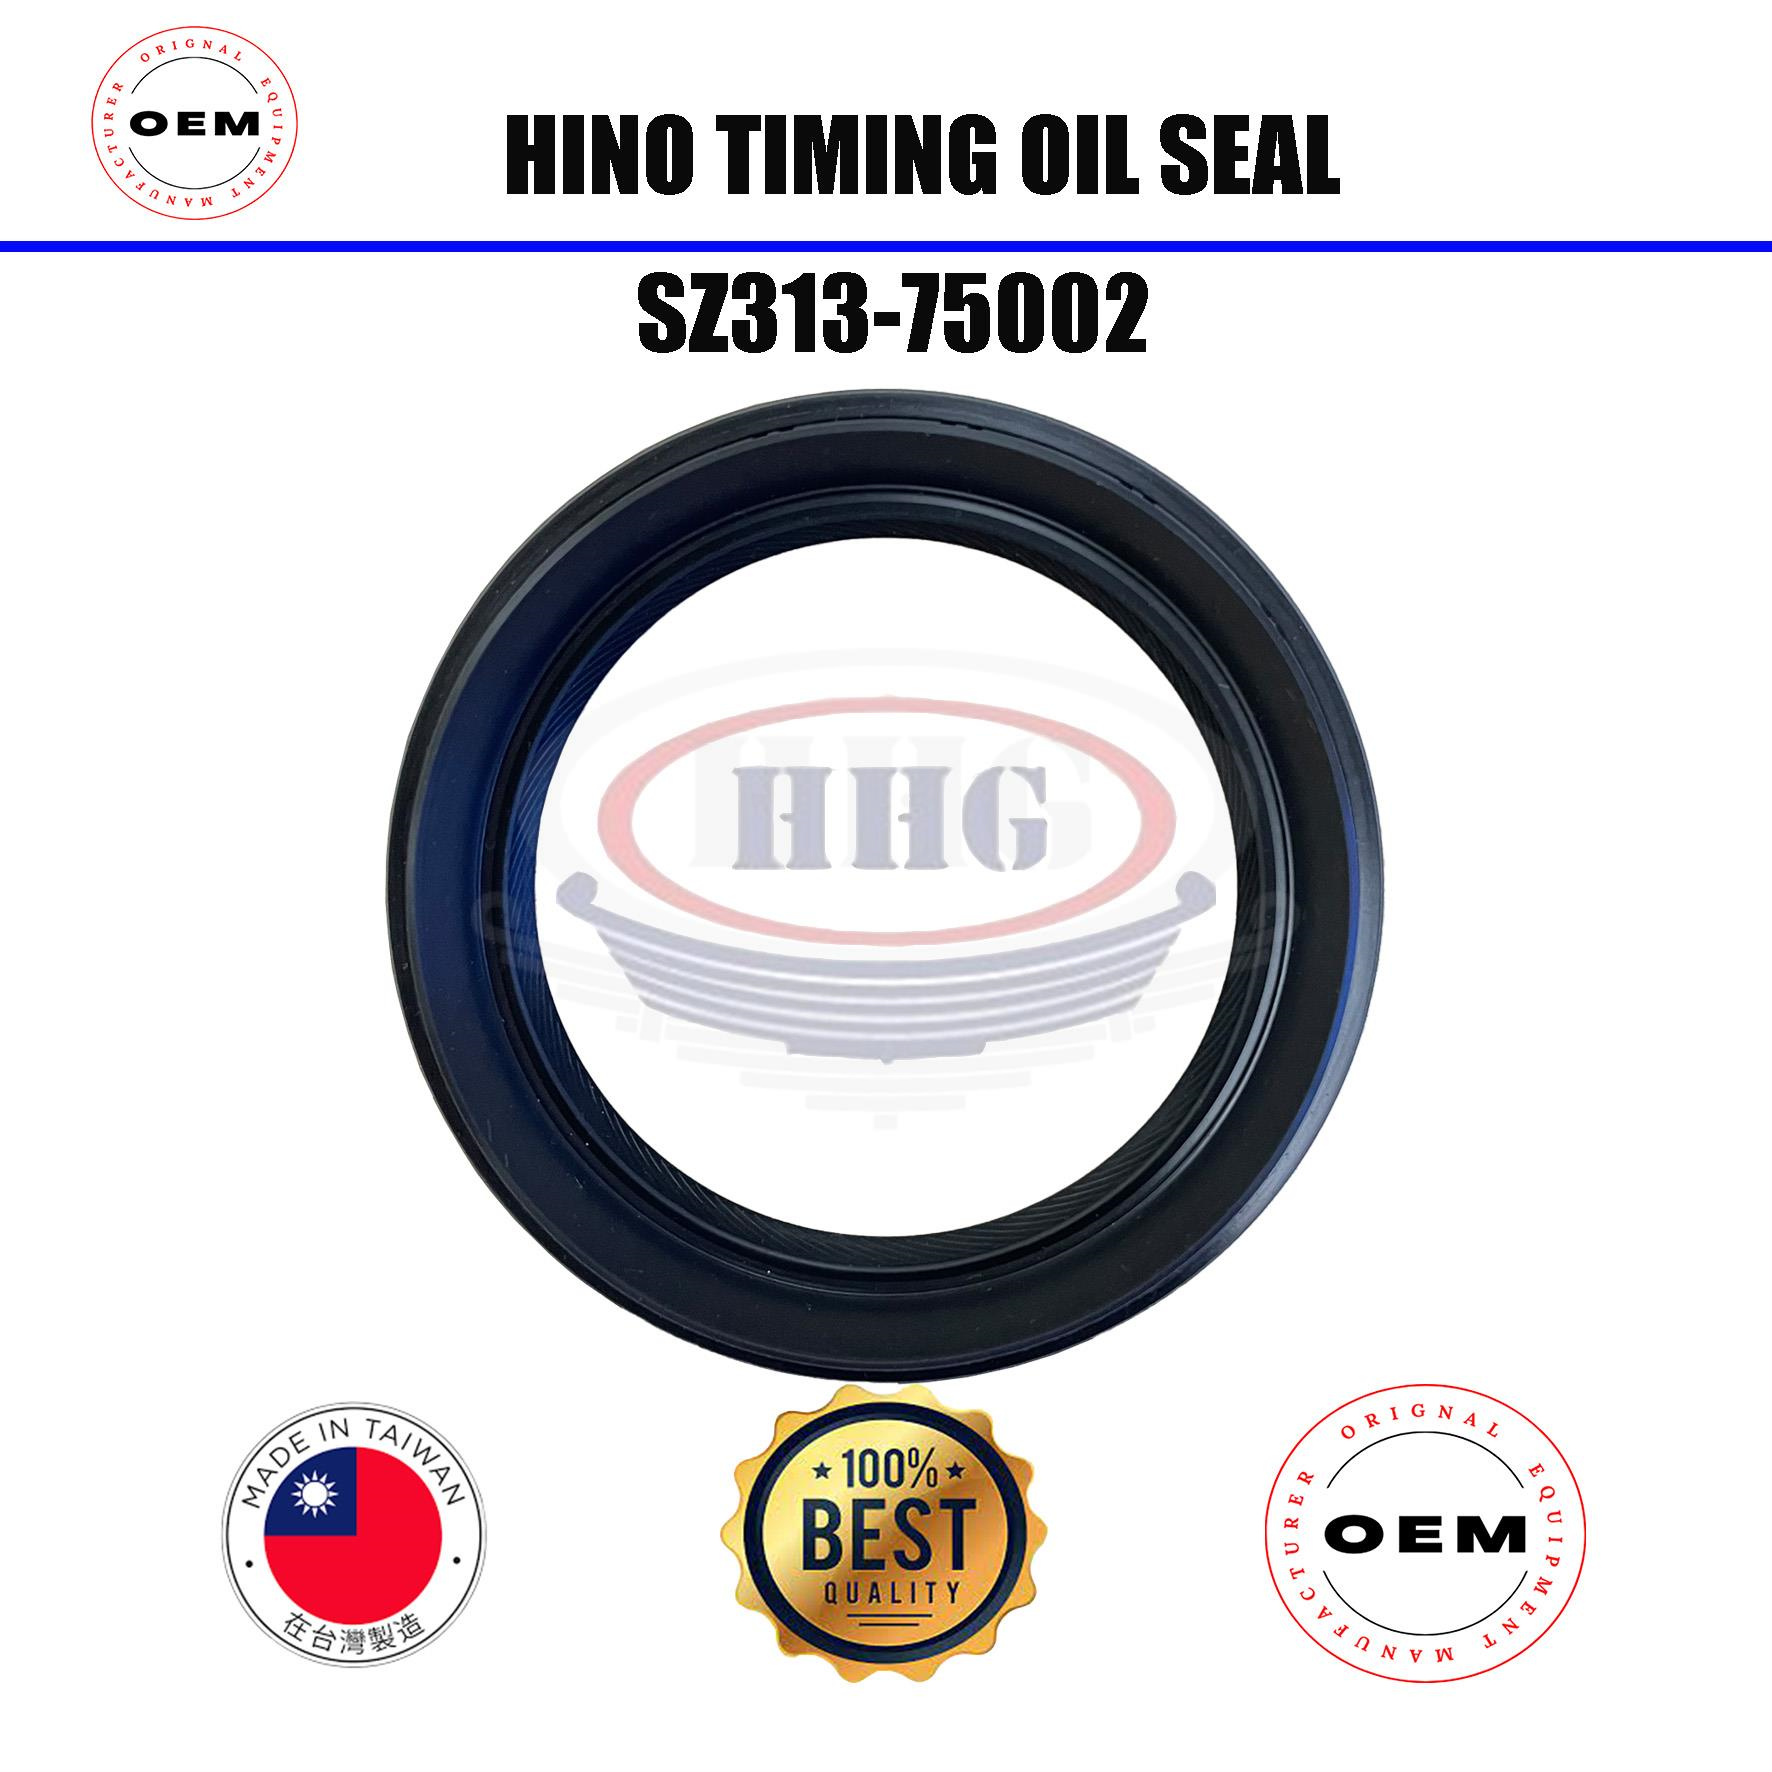 OEM Hino EM100 Timing Oil Seal (SZ313-75002)